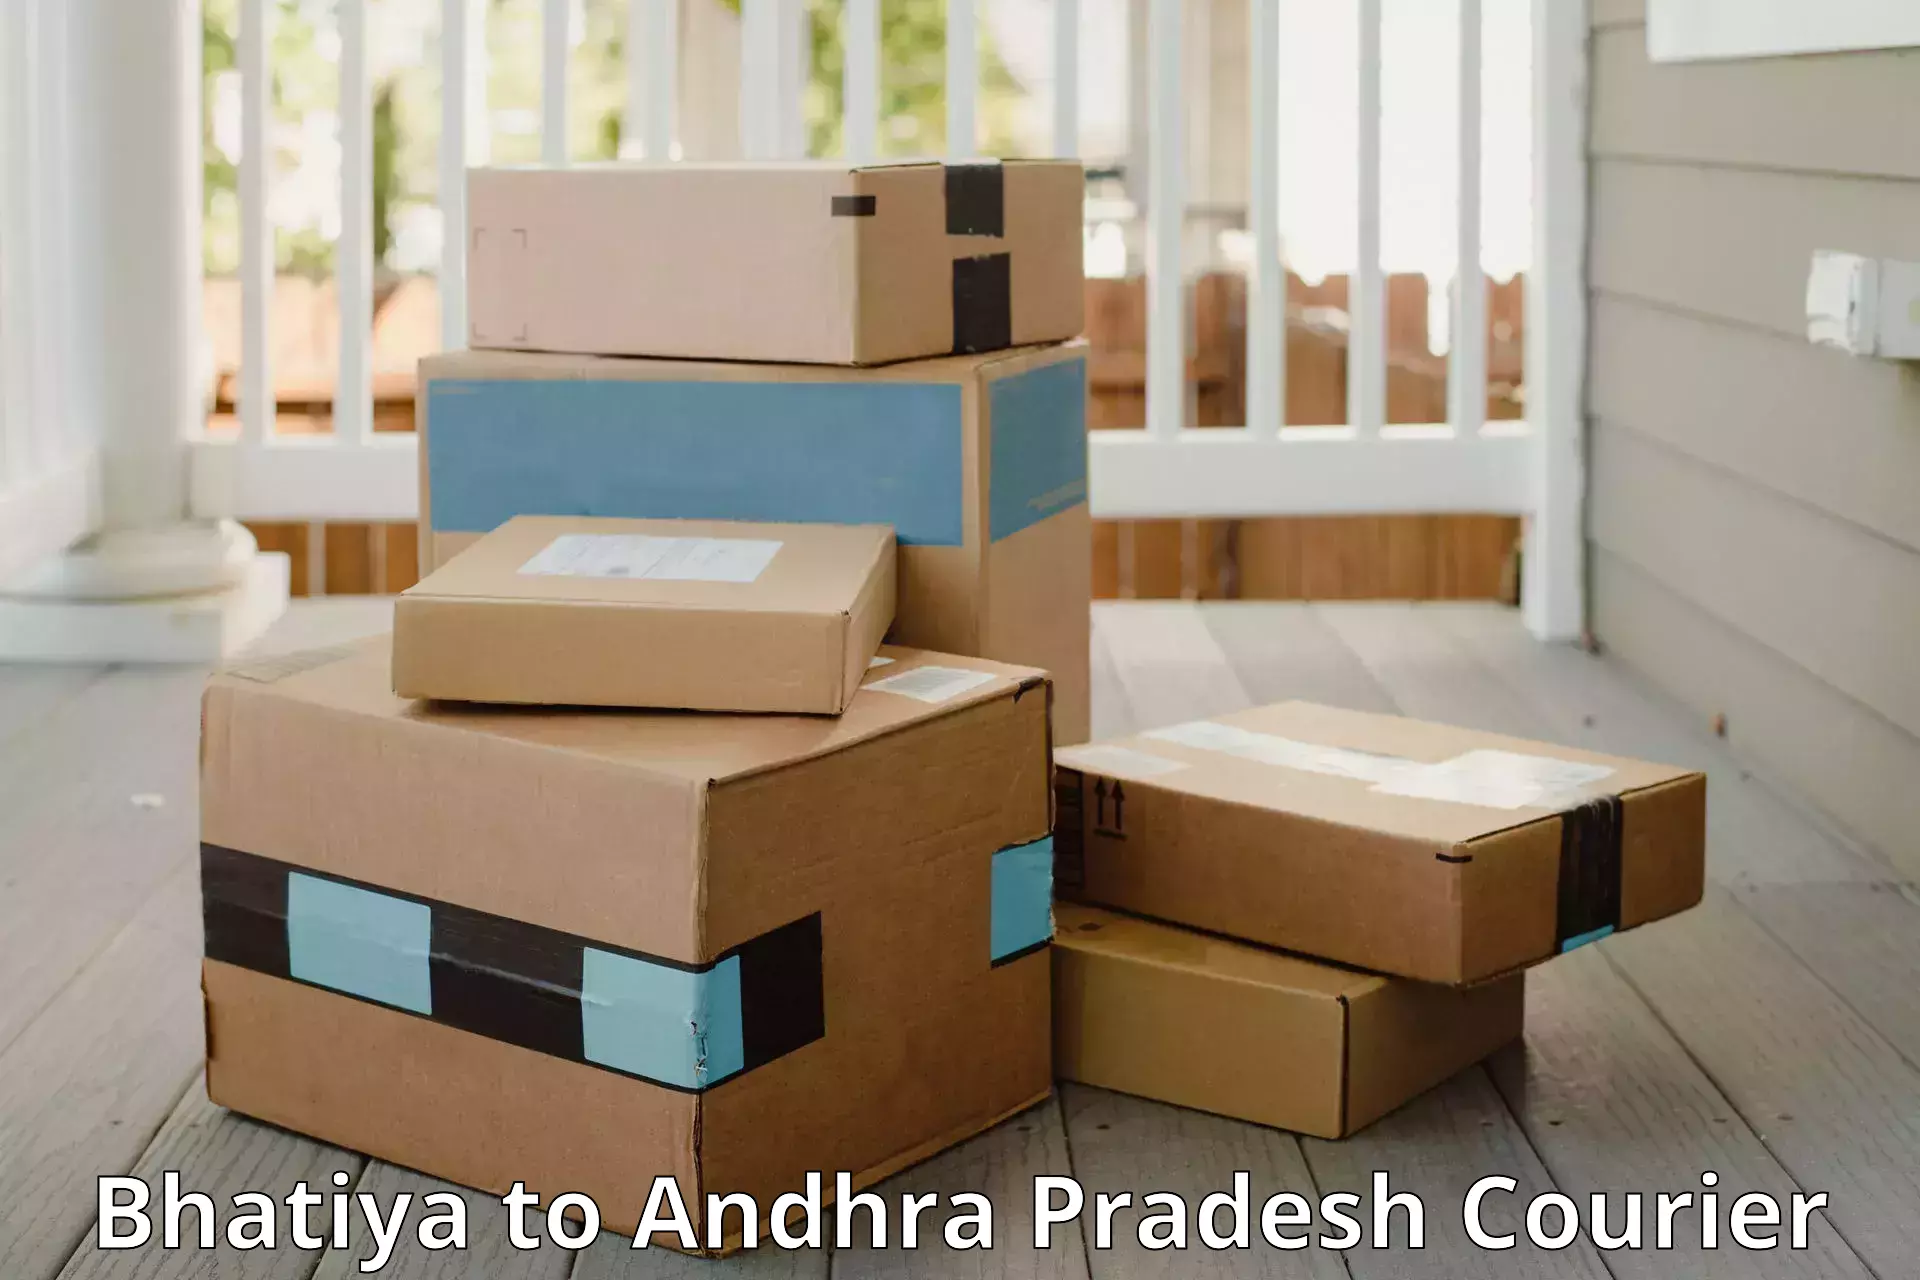 Express luggage delivery Bhatiya to Allagadda